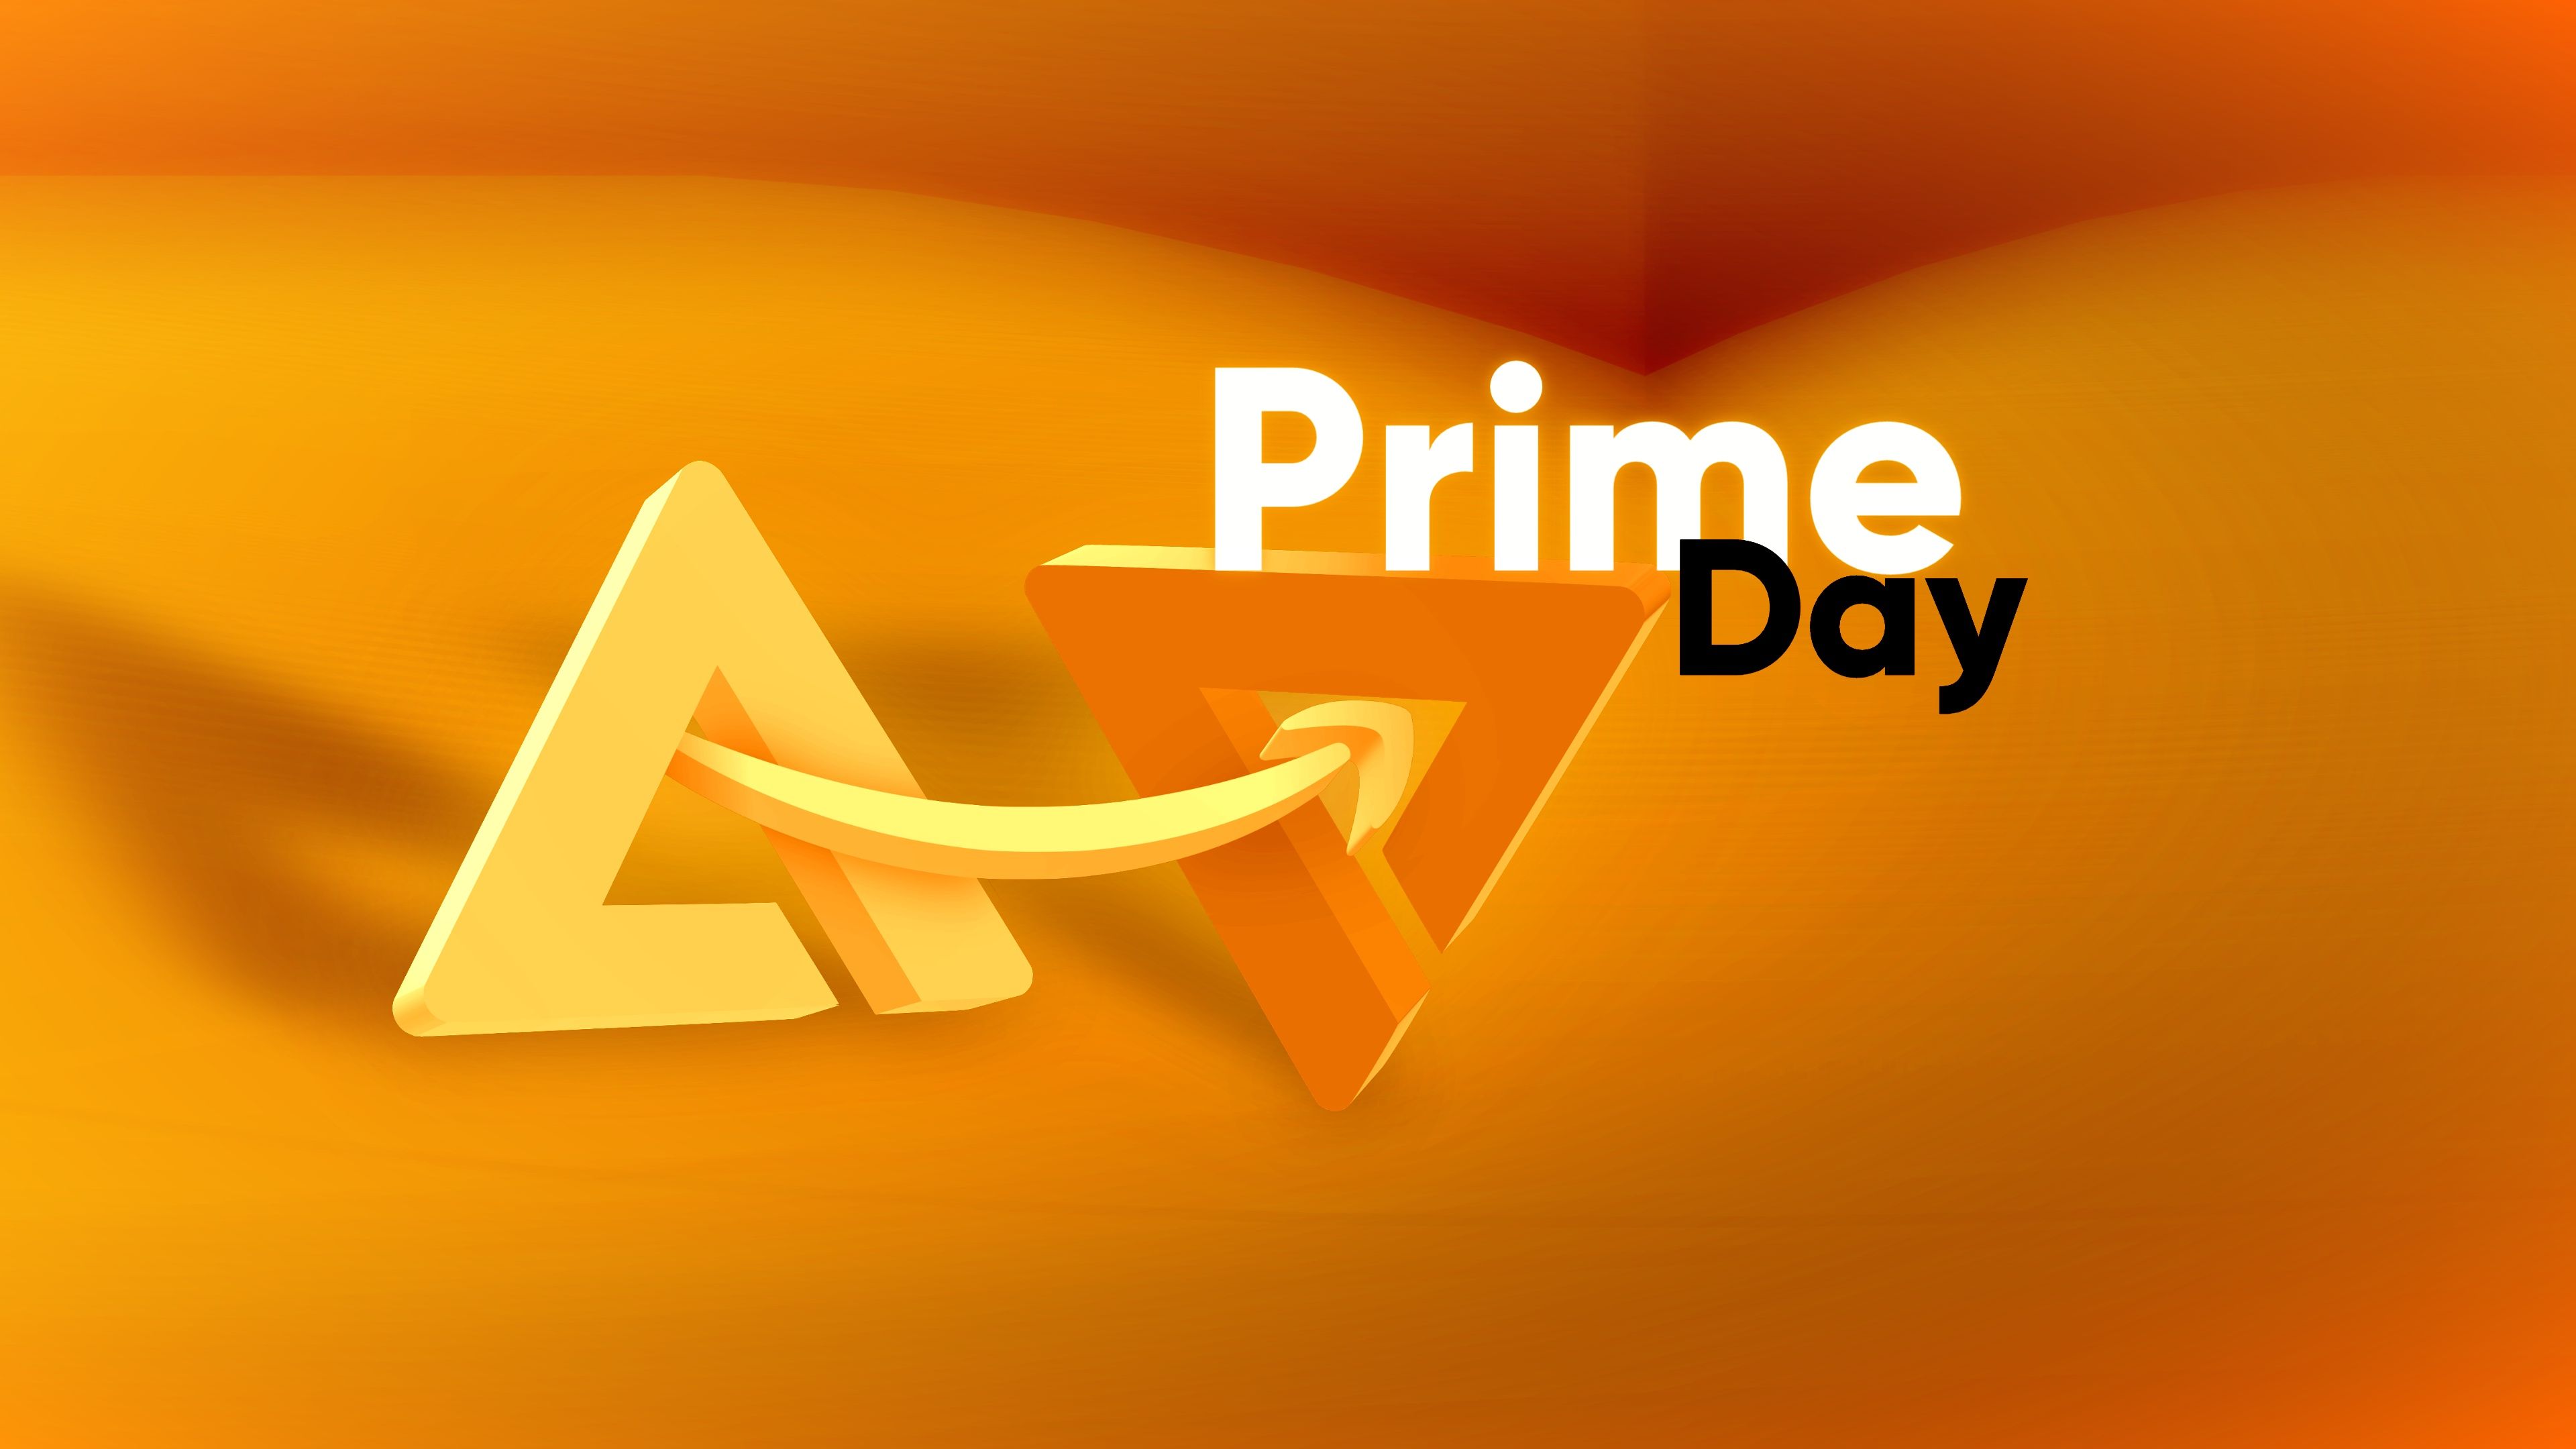 Cobertura das ofertas do Amazon Prime Day pelo Android Police.